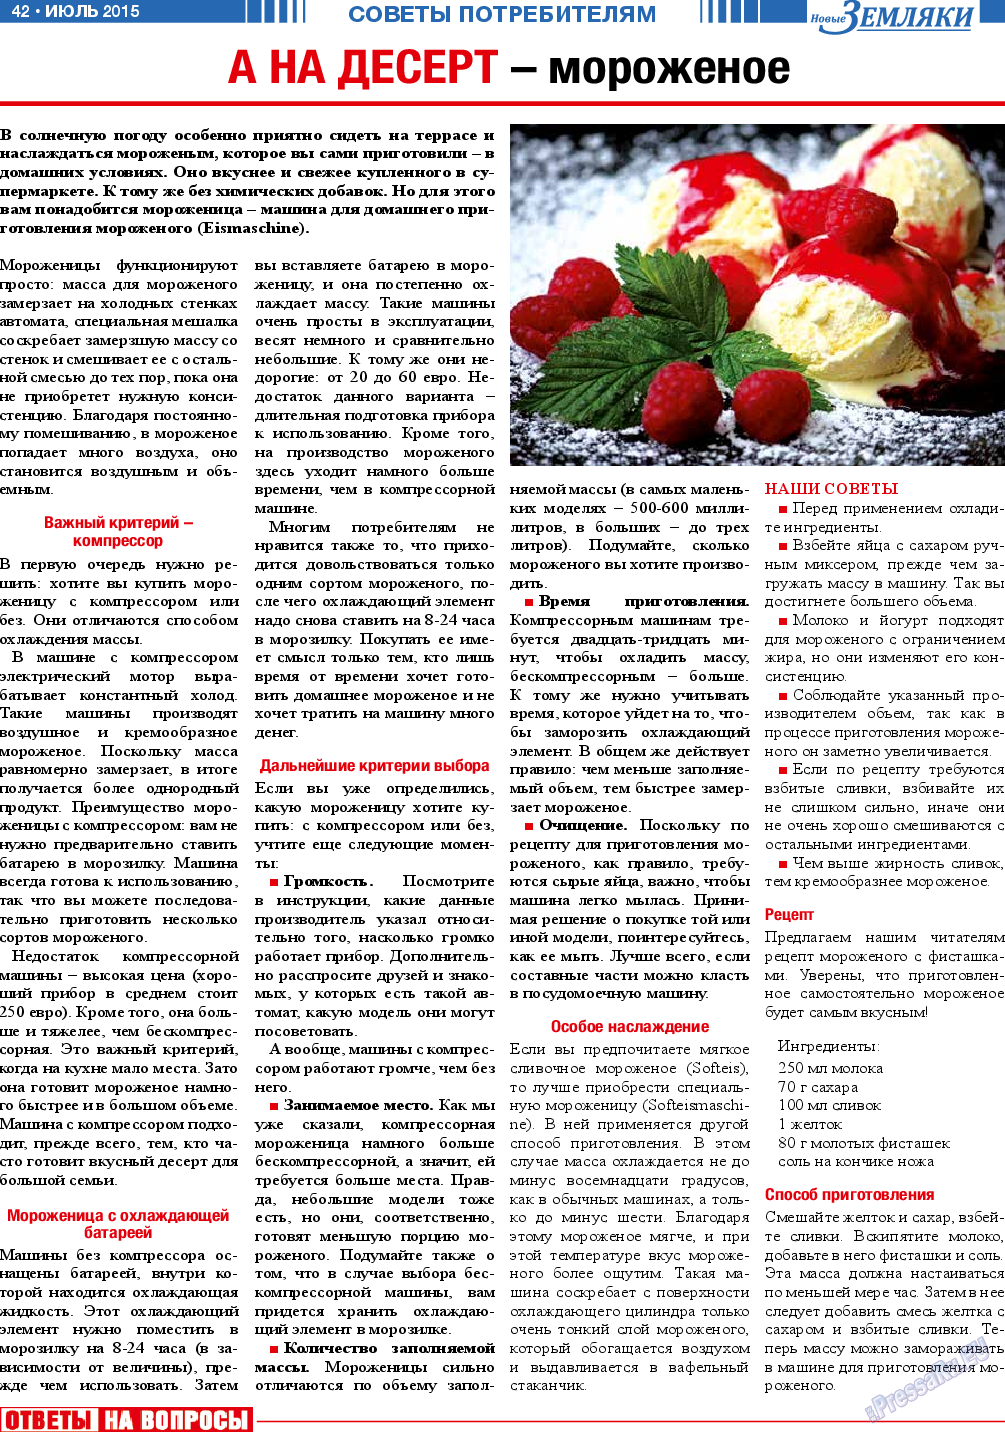 Новые Земляки, газета. 2015 №7 стр.42